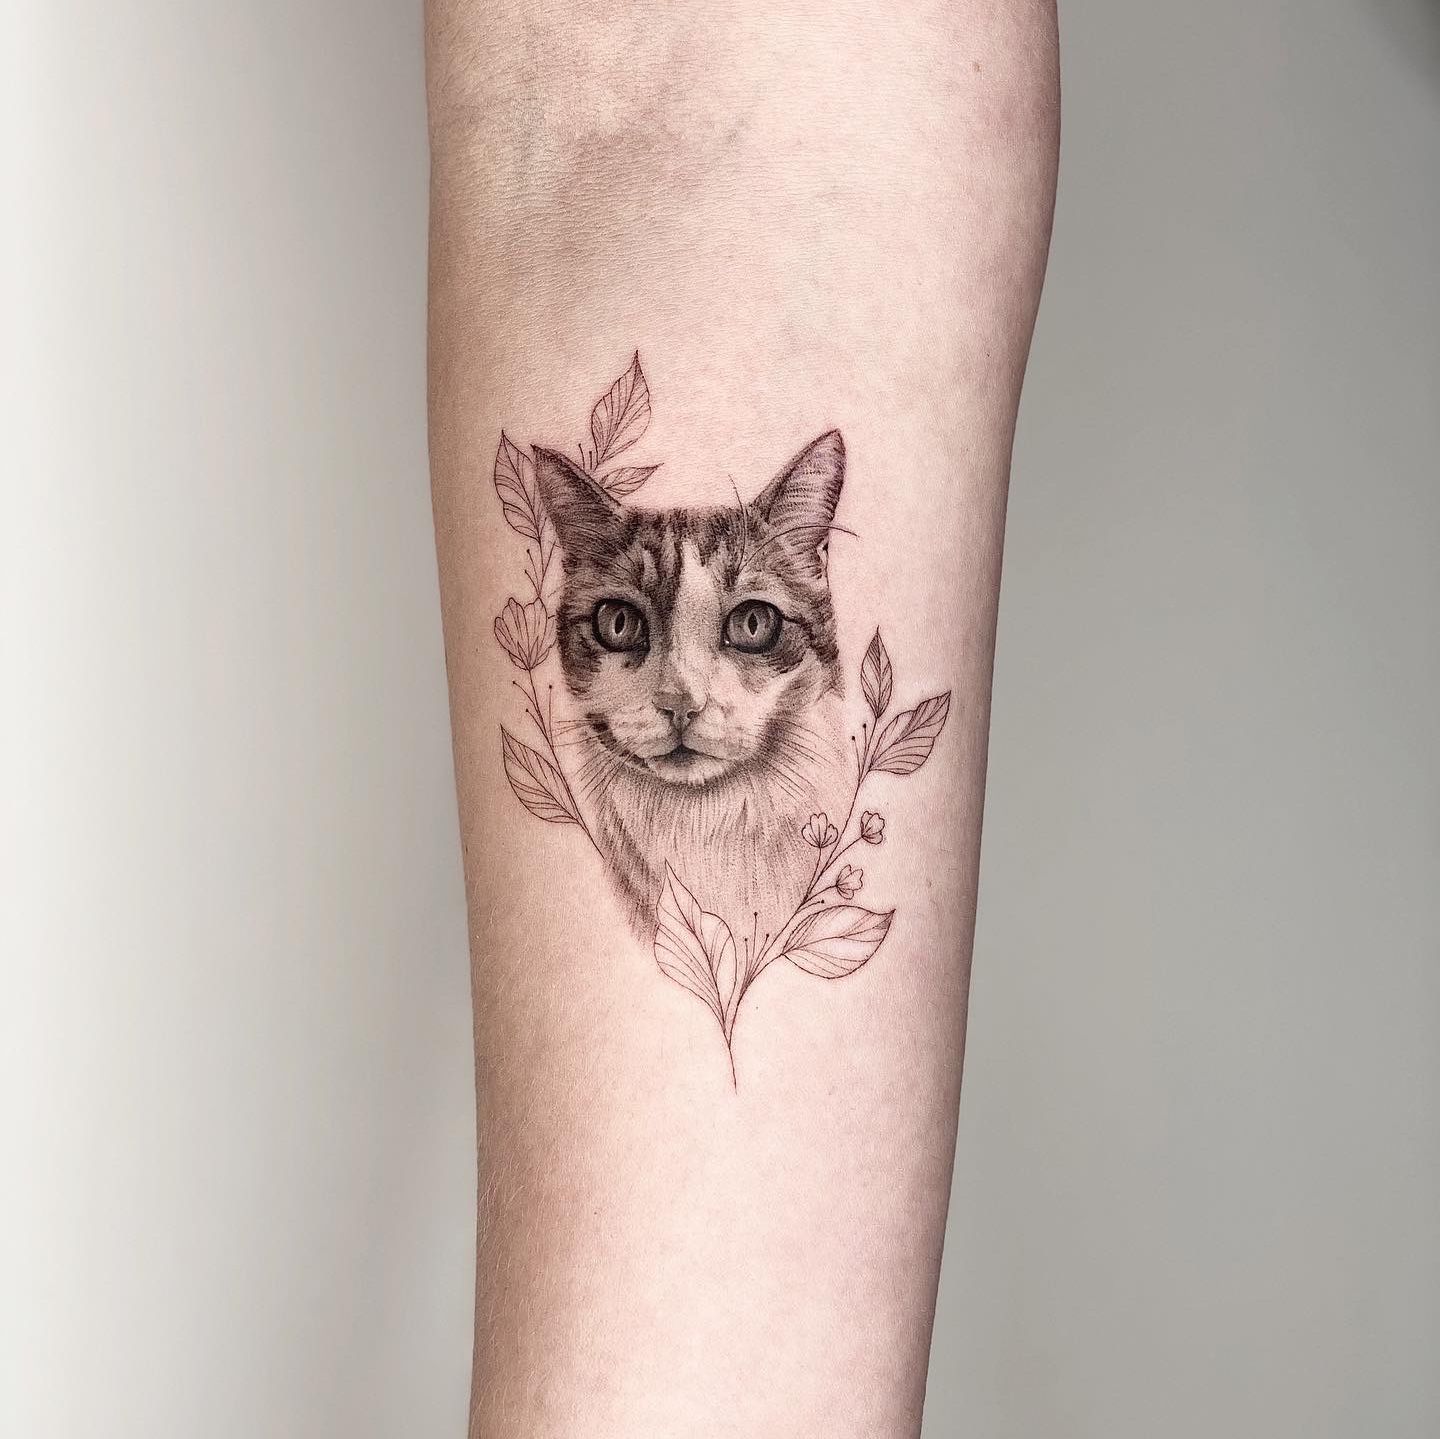 Fine Line Tattoo By Jessica Joy - ARTWOONZ - Artwoonz